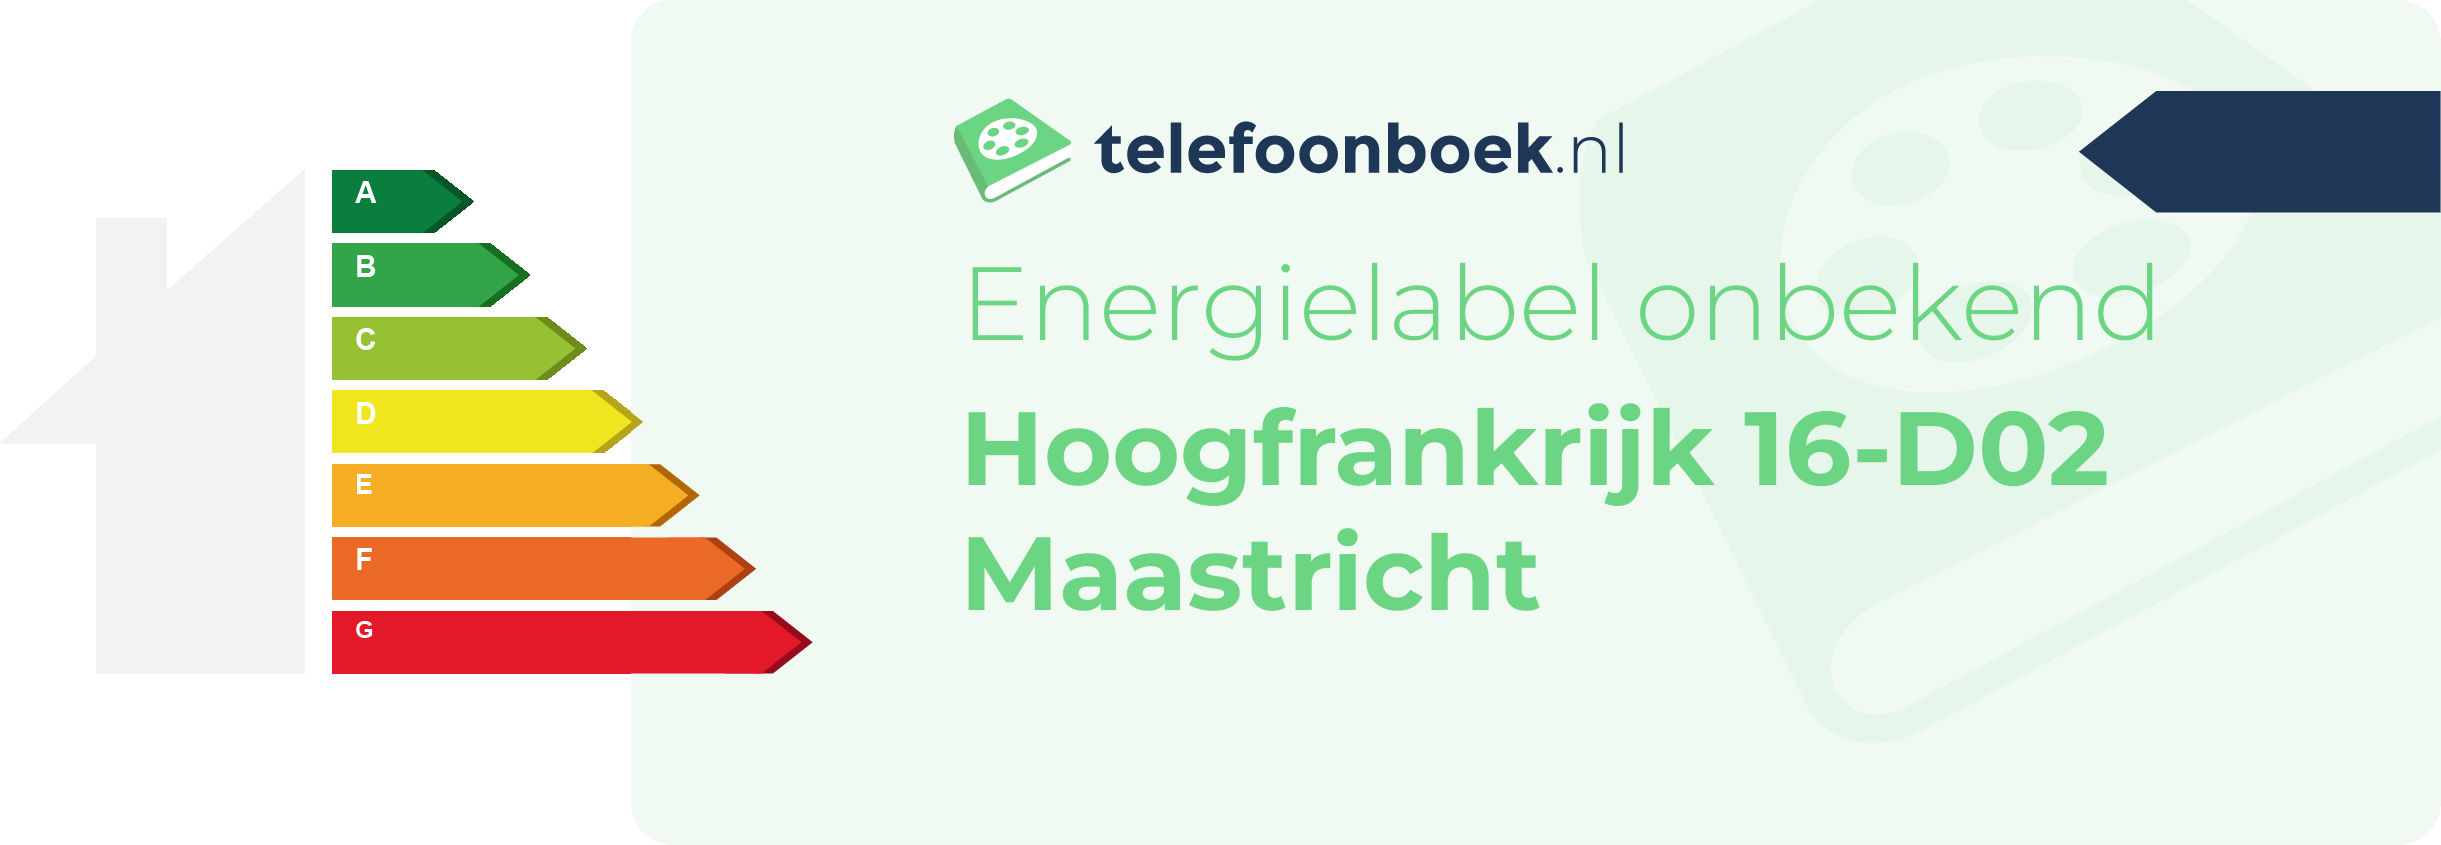 Energielabel Hoogfrankrijk 16-D02 Maastricht